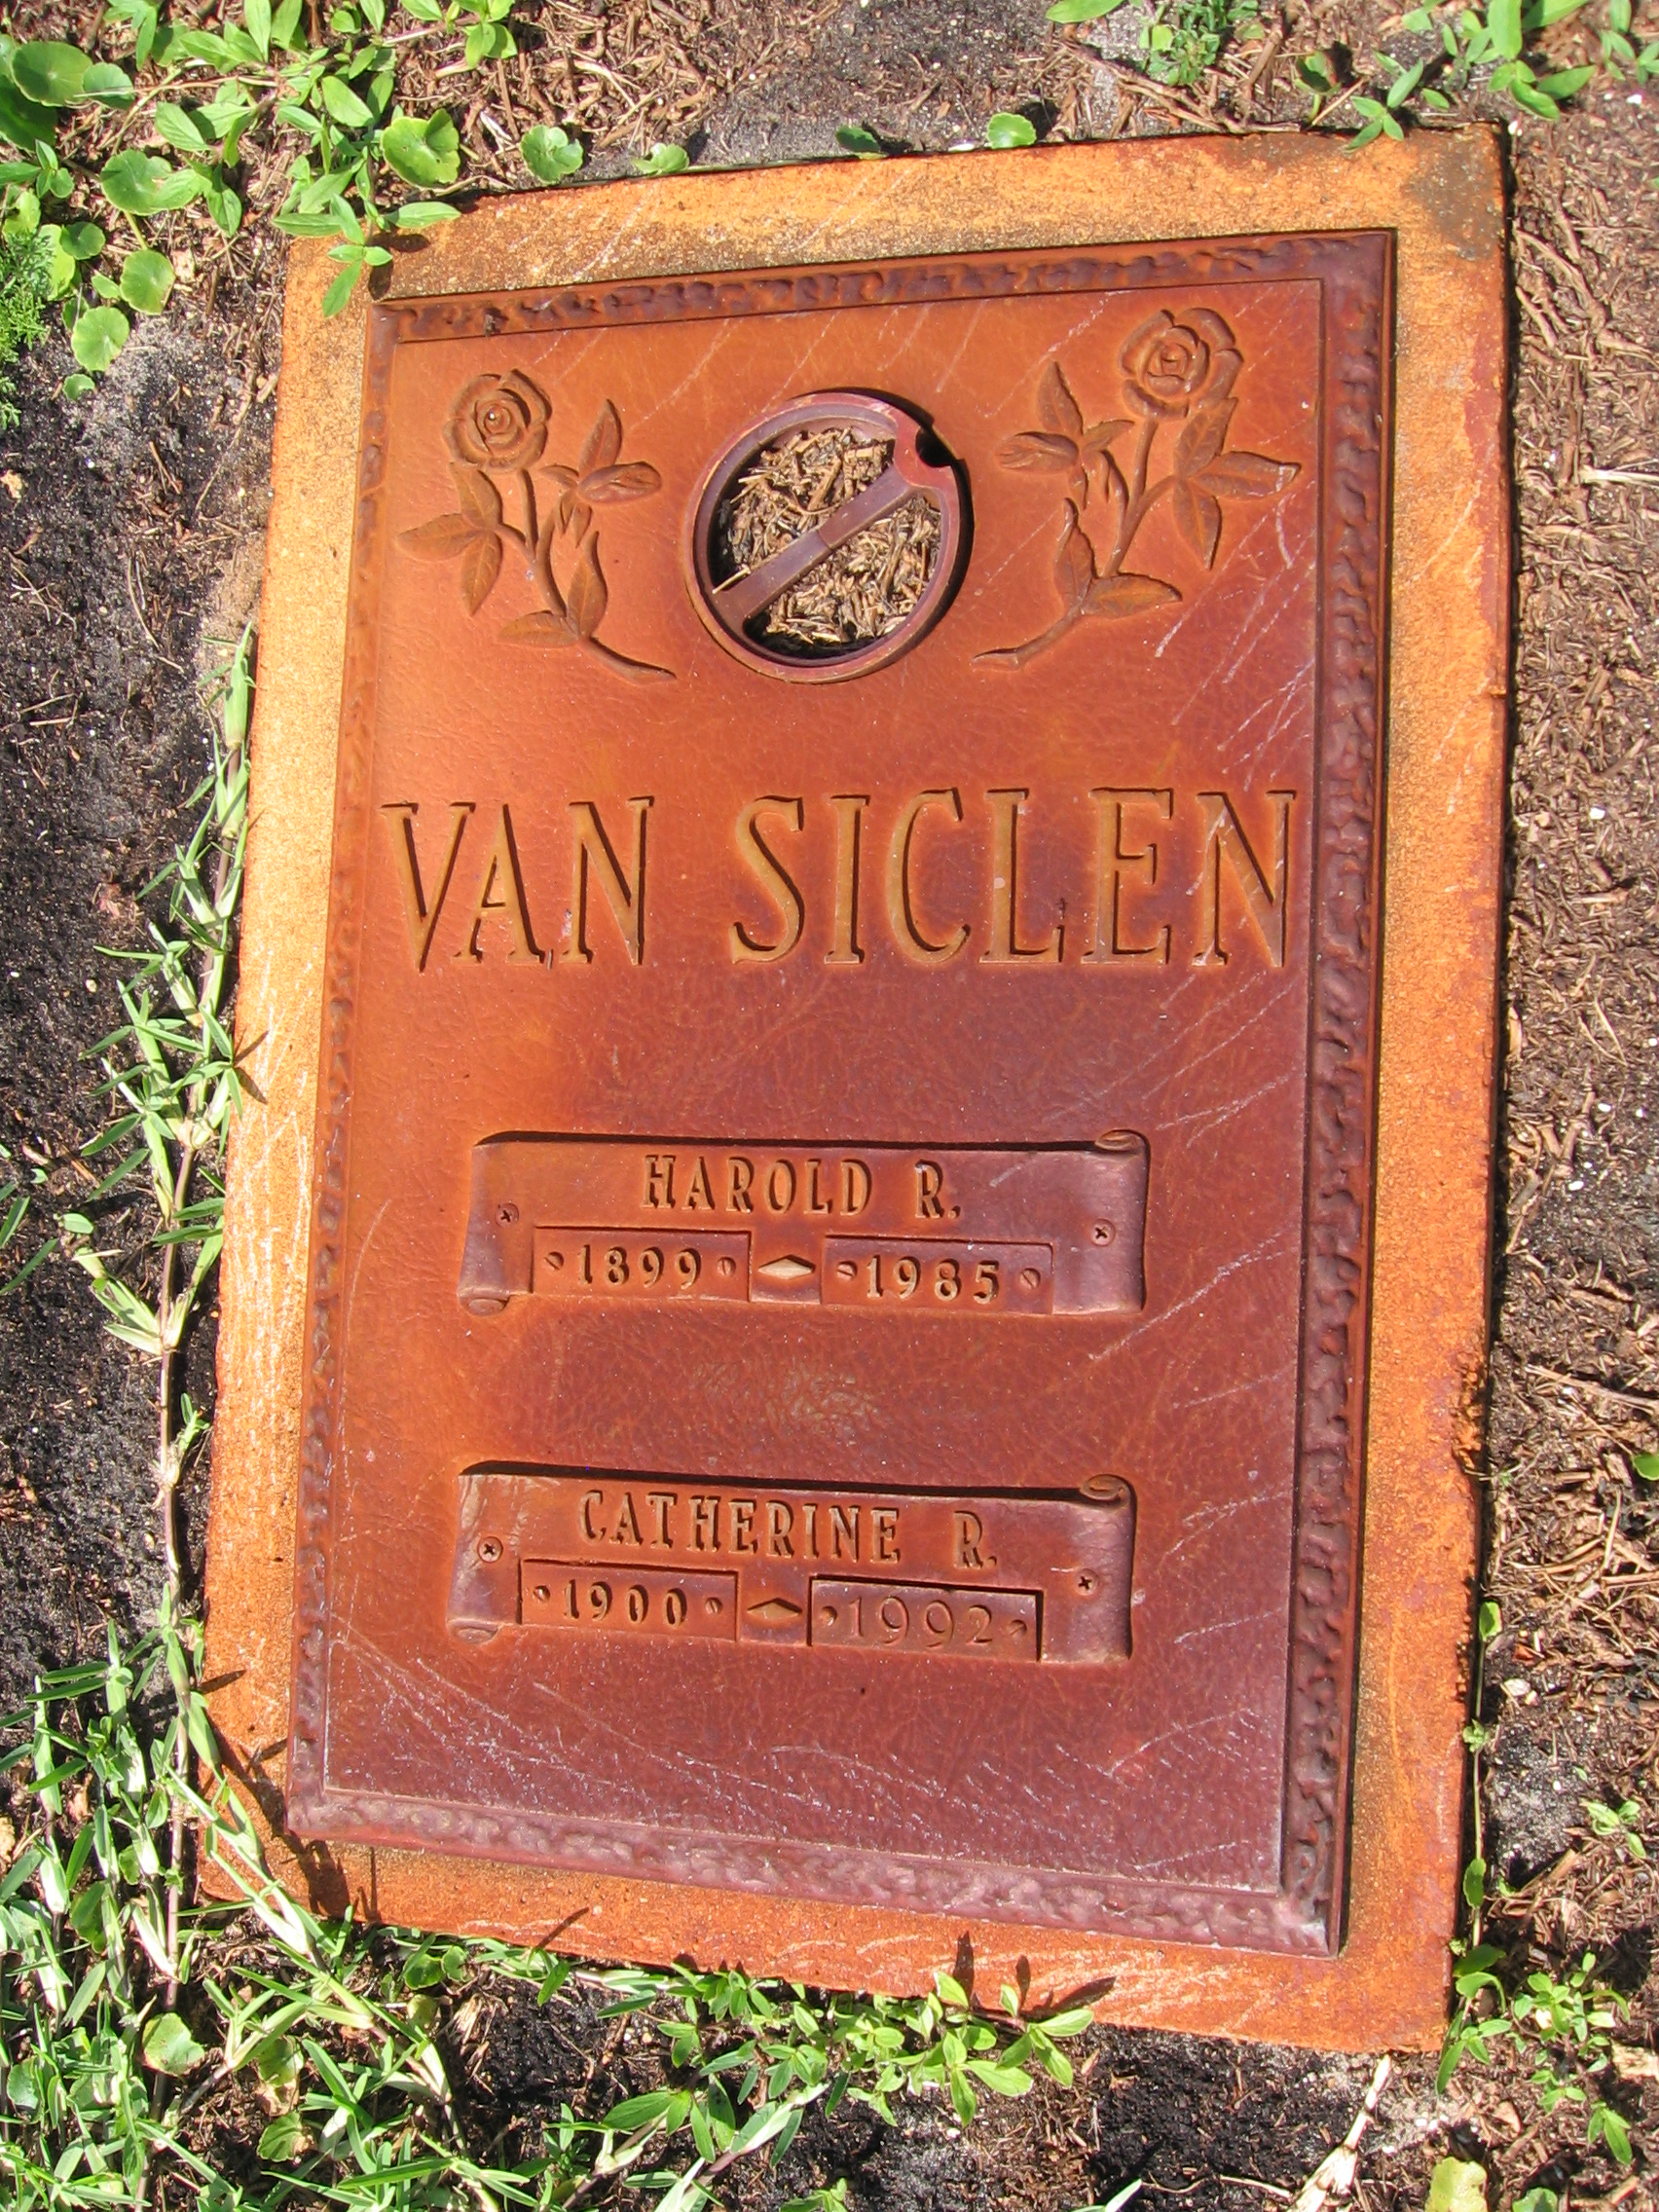 Harold R Van Siclen